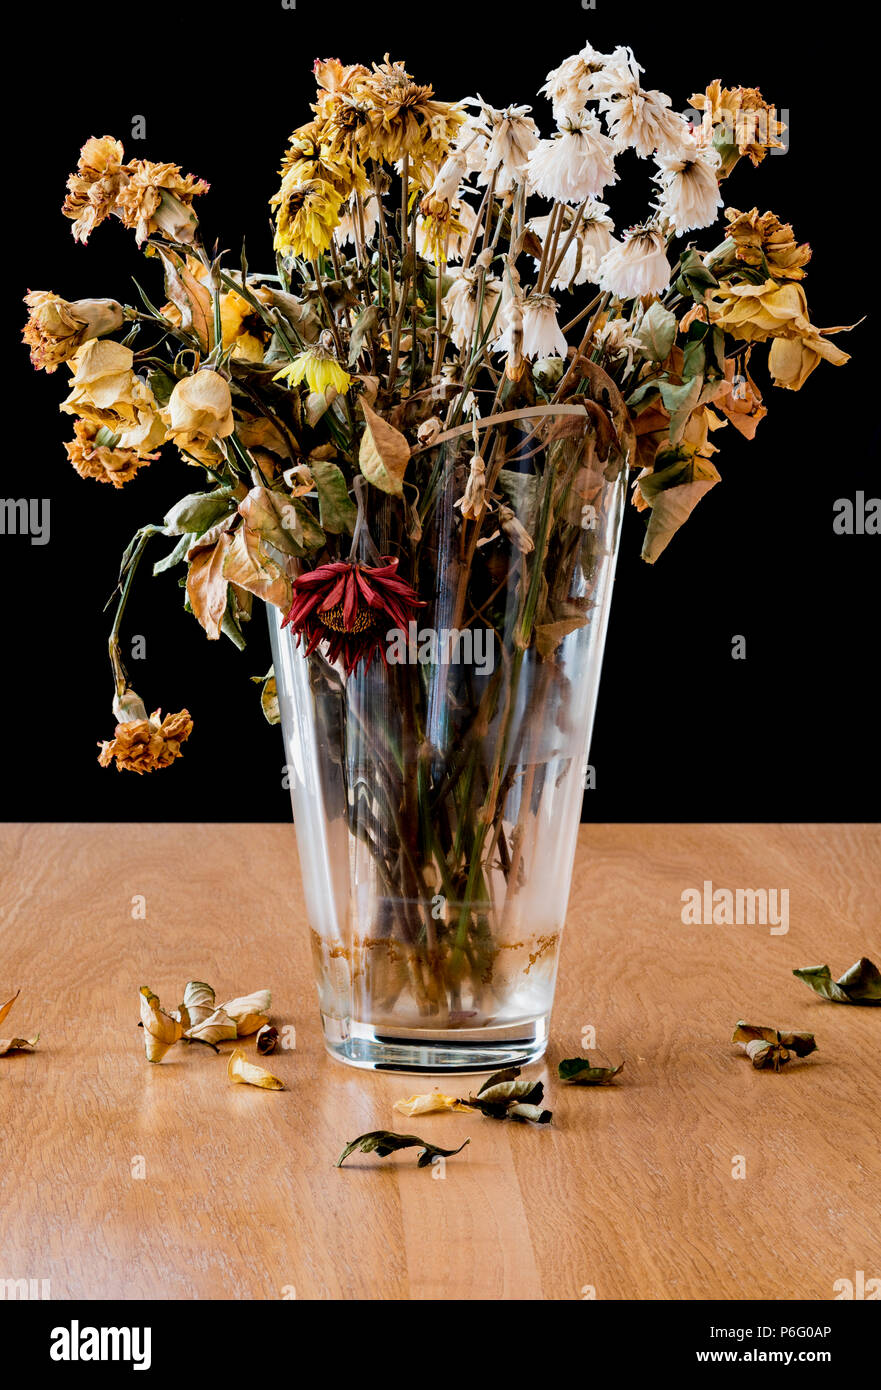 Vase de fleurs mortes et en décomposition. Représentant le sentiment de solitude, la tristesse, la dépression et la perte de la vie. Banque D'Images